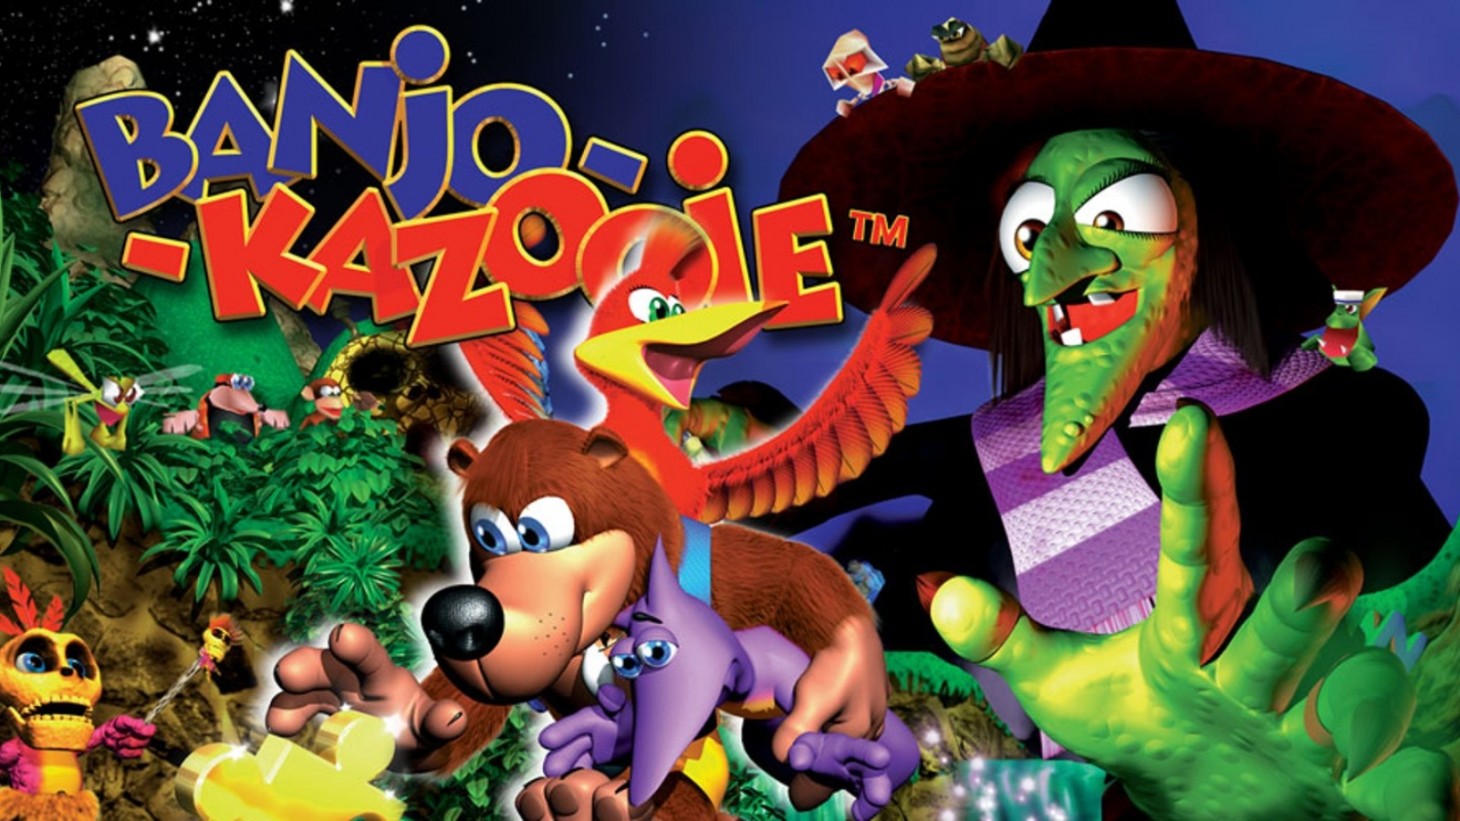 N64 Game Banjo-Kazooie Coming Nintendo Switch Online + Expansion